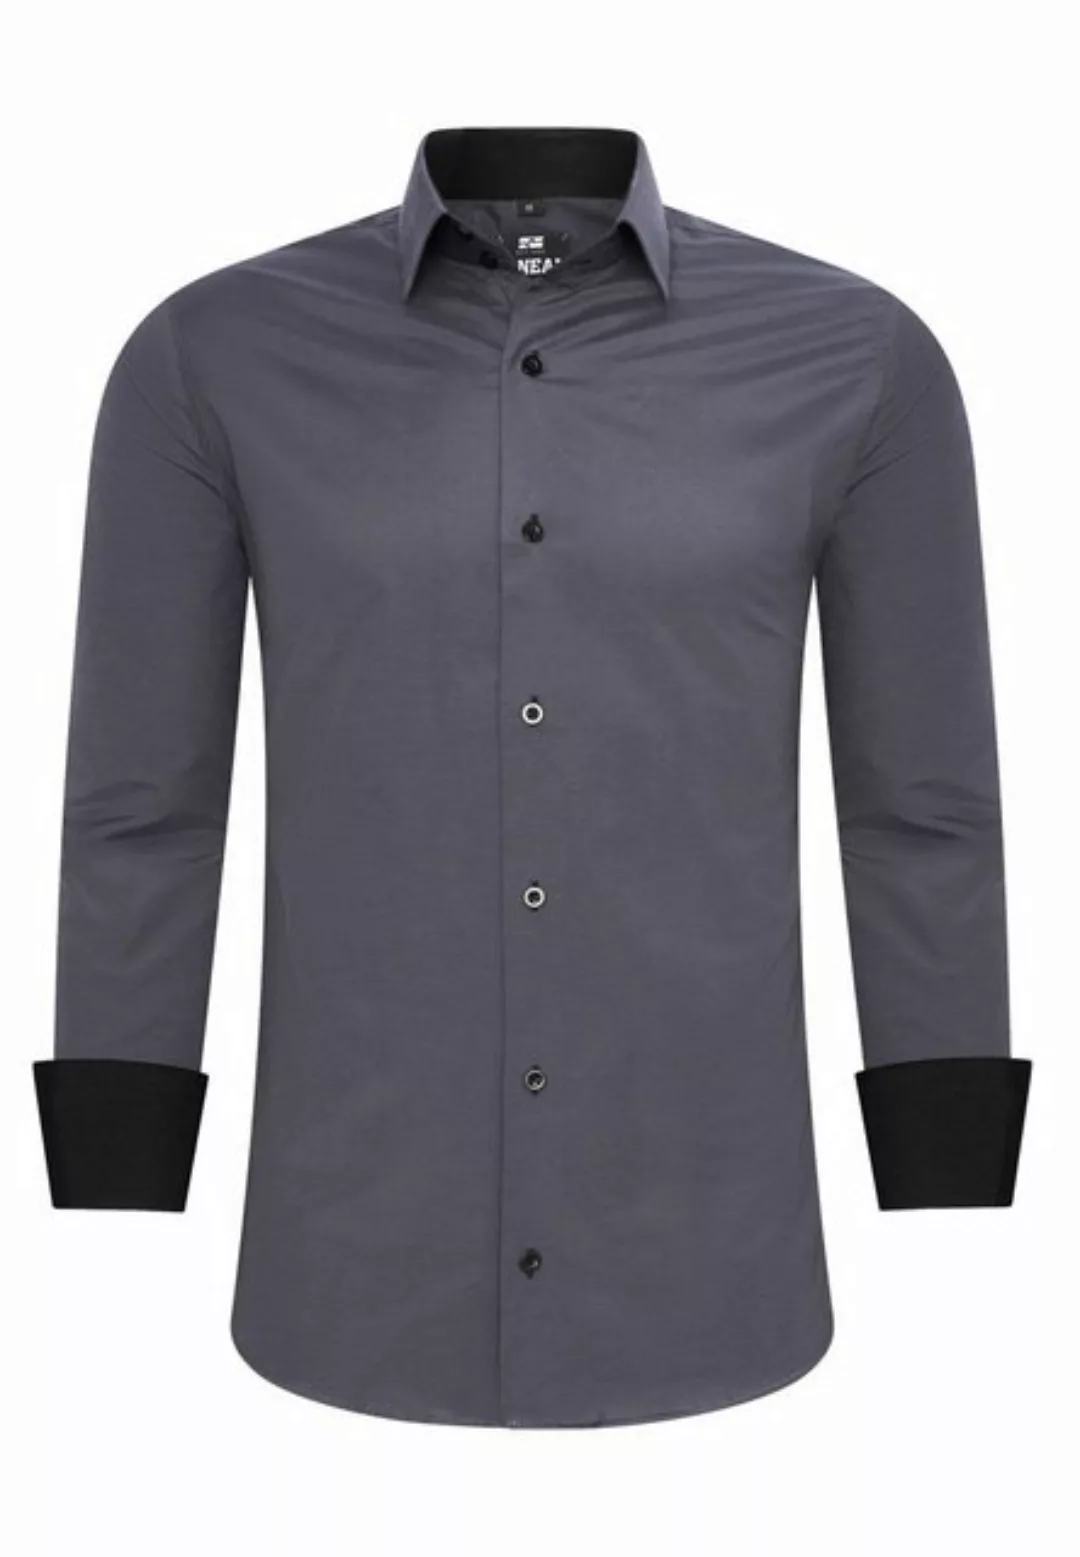 R-NEAL Businesshemd Herren Kontrast Hemd "R-NEAL" Hochzeit-Hemd Slim Fit St günstig online kaufen